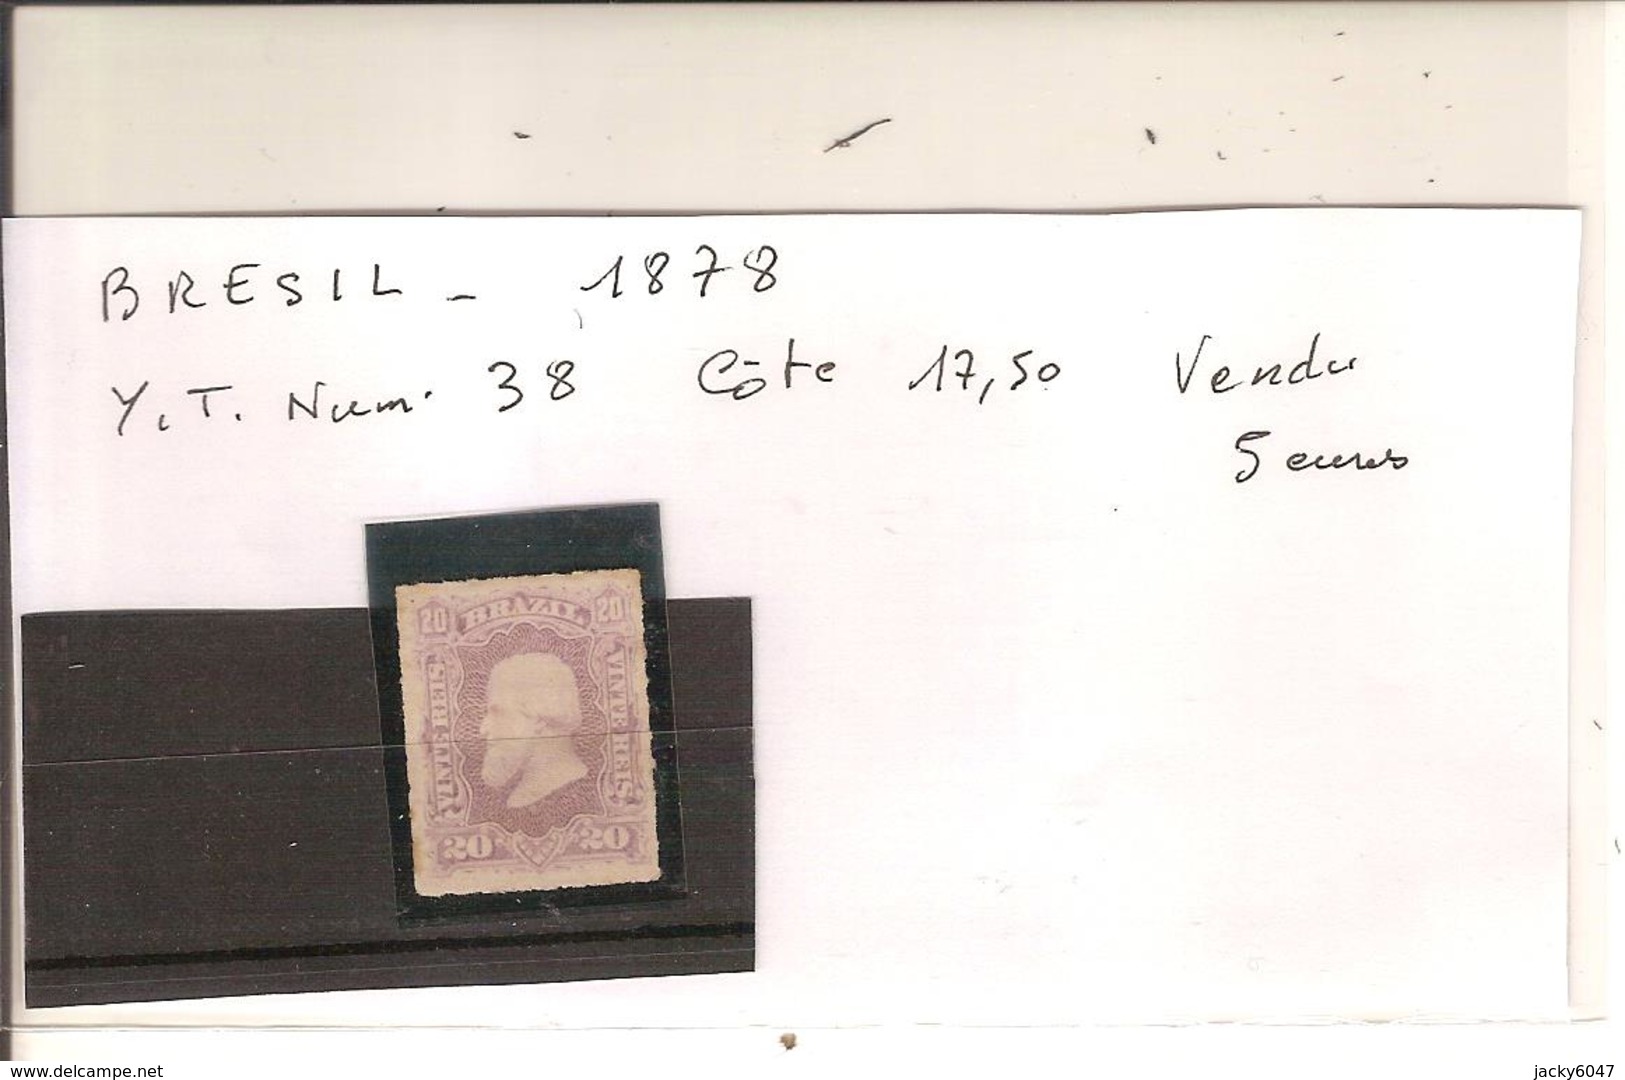 Brésil - 1878 - Y/T Num 38 Côte 17,50 Vendu 5euros - Unused Stamps